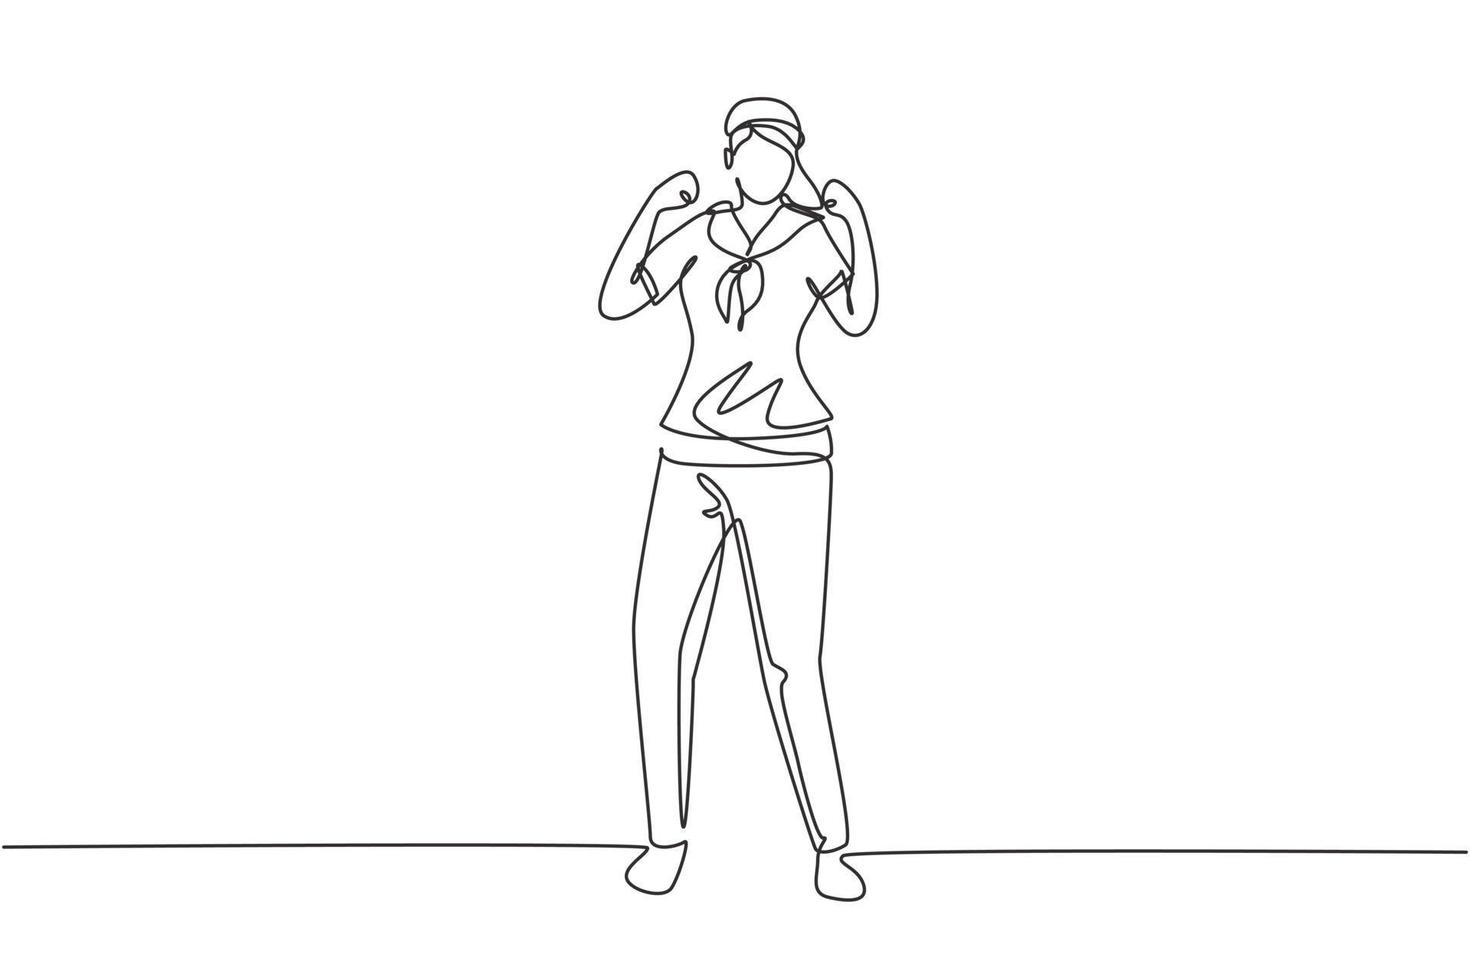 una sola linea di disegno marinaio donna si leva in piedi con un gesto celebrativo e una sciarpa che si unisce alla nave da crociera che trasporta passeggeri che viaggiano attraverso i mari. illustrazione vettoriale grafica di disegno di disegno di linea continua moderna